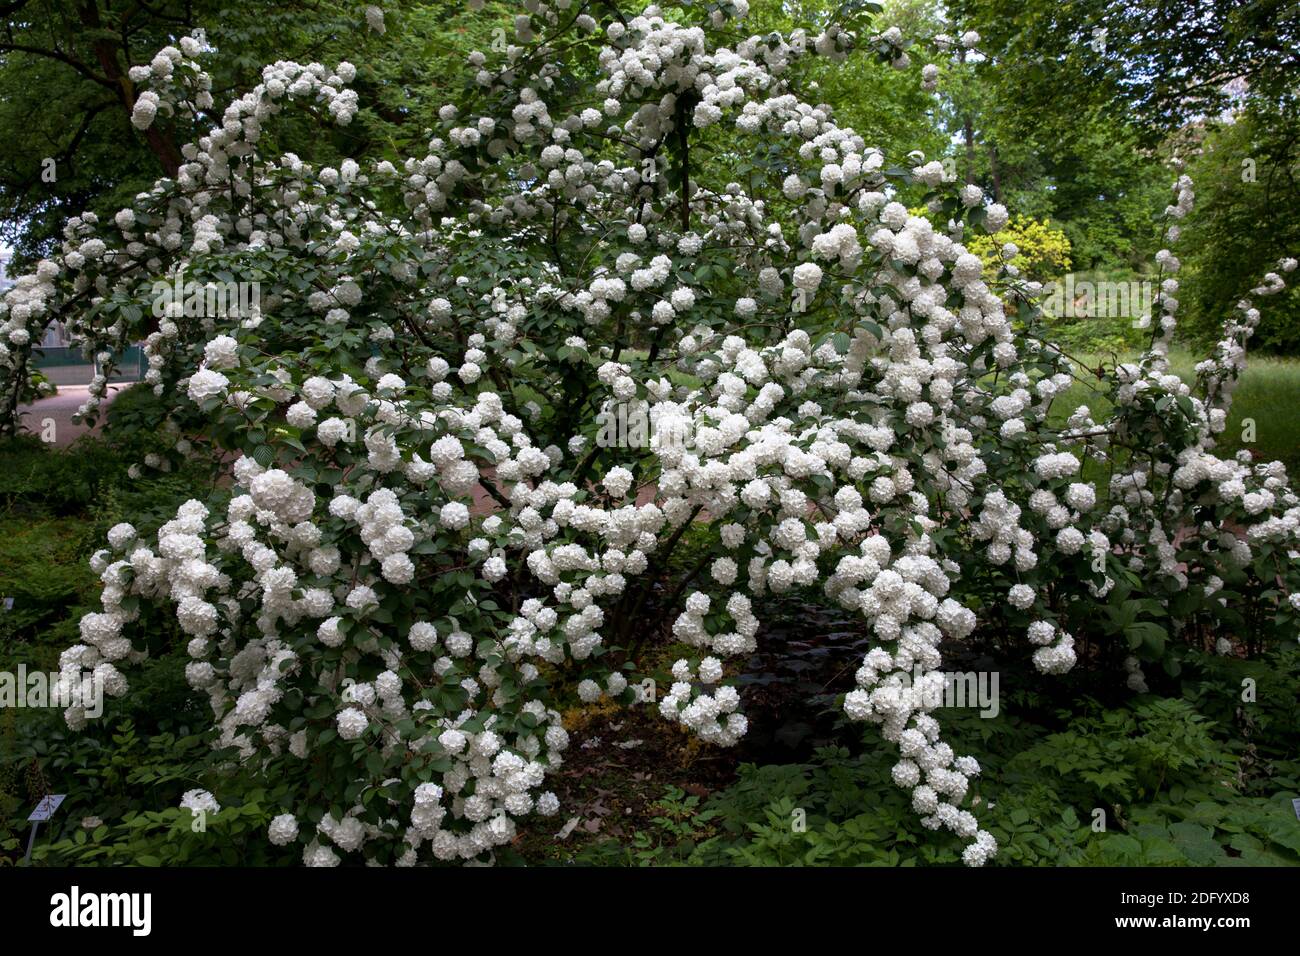 Viburnum Strauch in einem öffentlichen Garten, Deutschland. Stockfoto